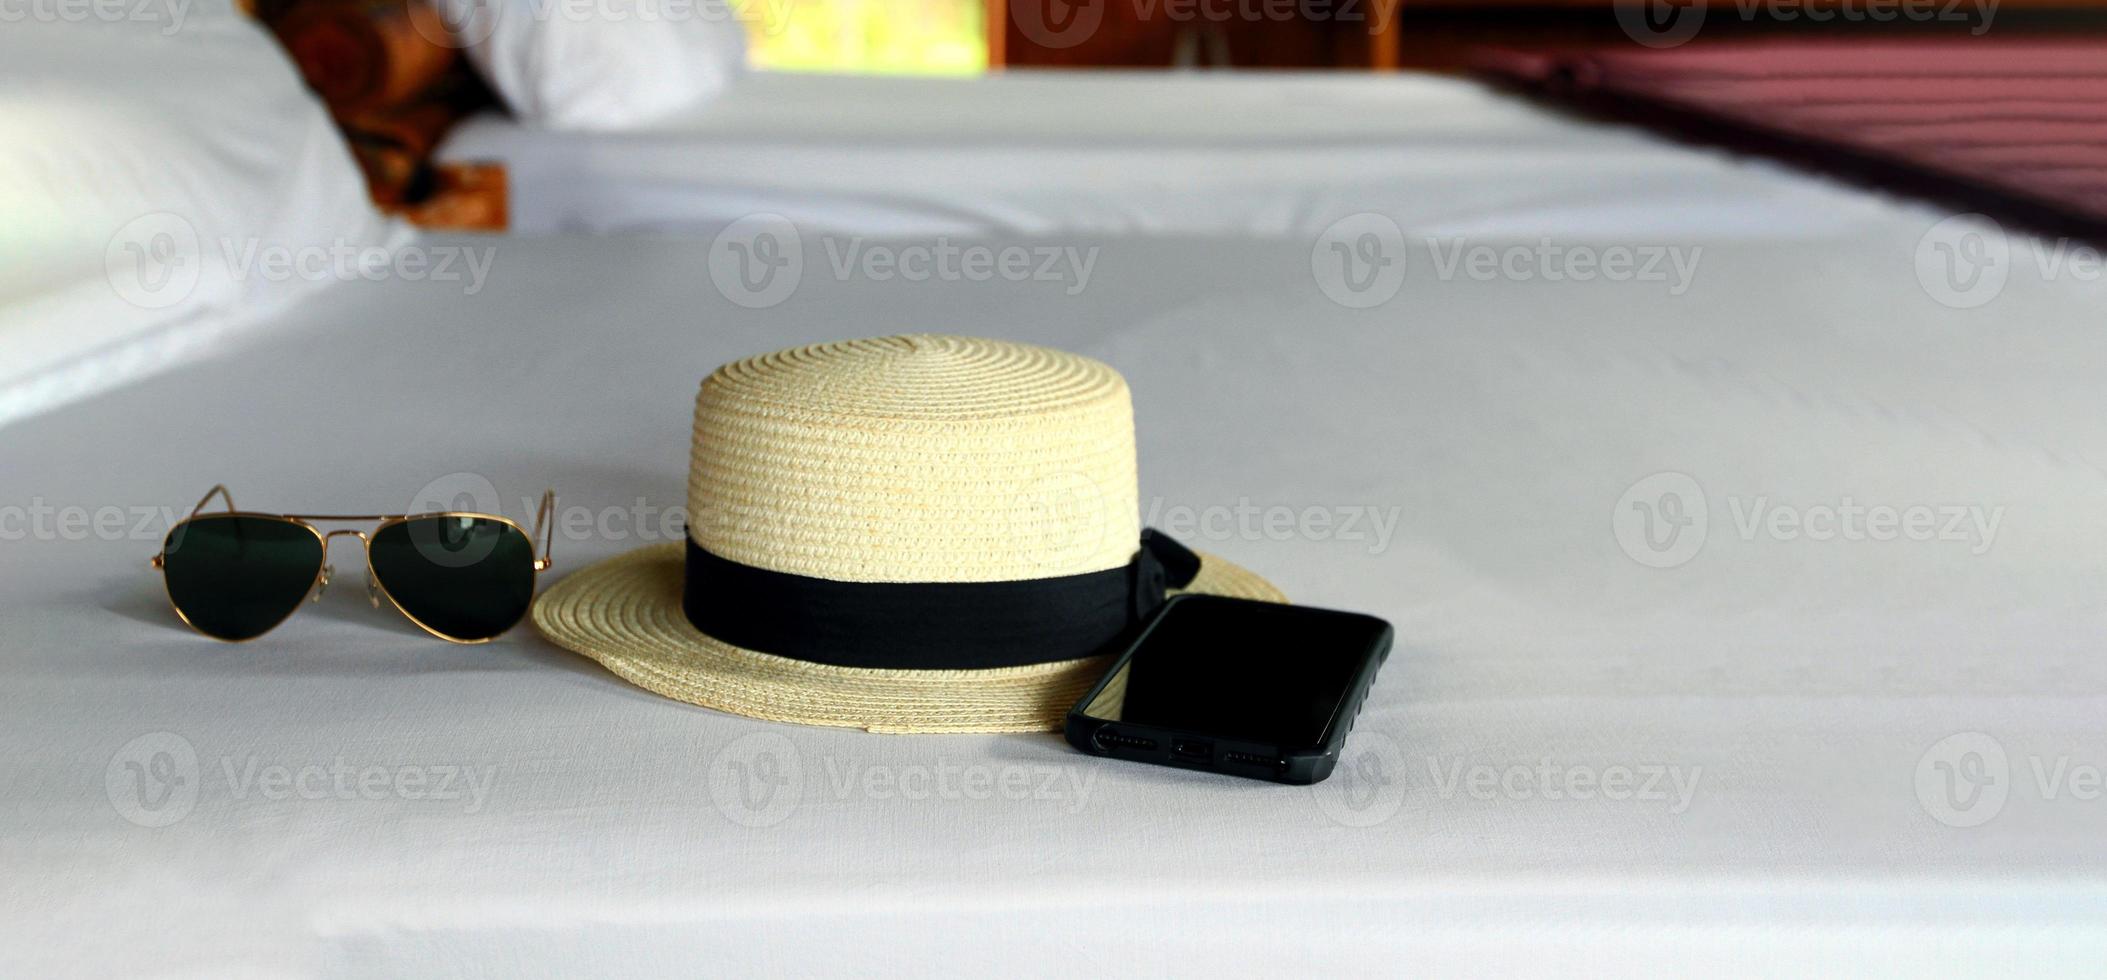 tiempo de vacaciones el fin de semana con gafas de sol negras, sombrero de paja vintage blanco y teléfono inteligente en una cama blanca con espacio para copiar. concepto de viajes, accesorios, moda y tiempo de descanso foto